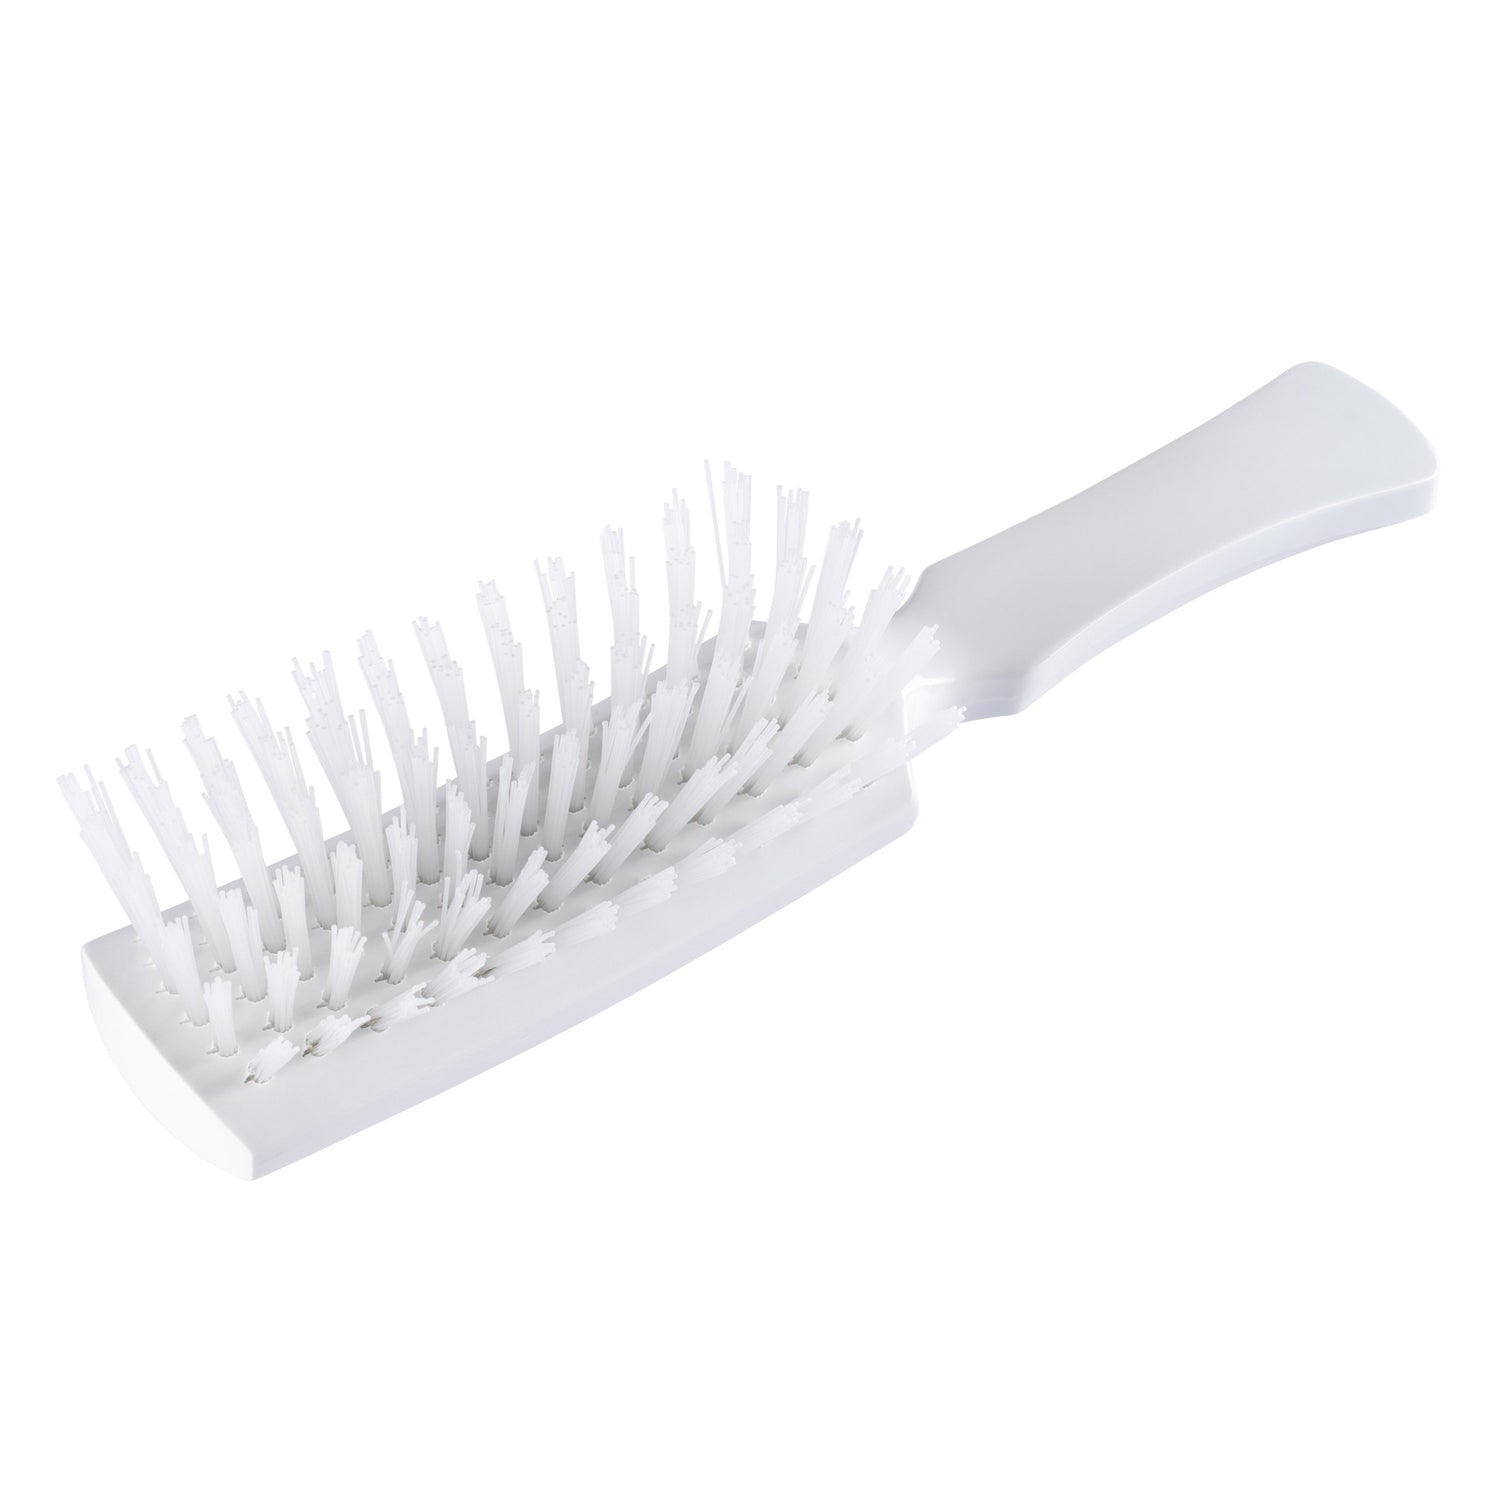 Fuller Brush Nylon Professional Hairbrush - Firm Bristled Pro Hair Brush for Sty